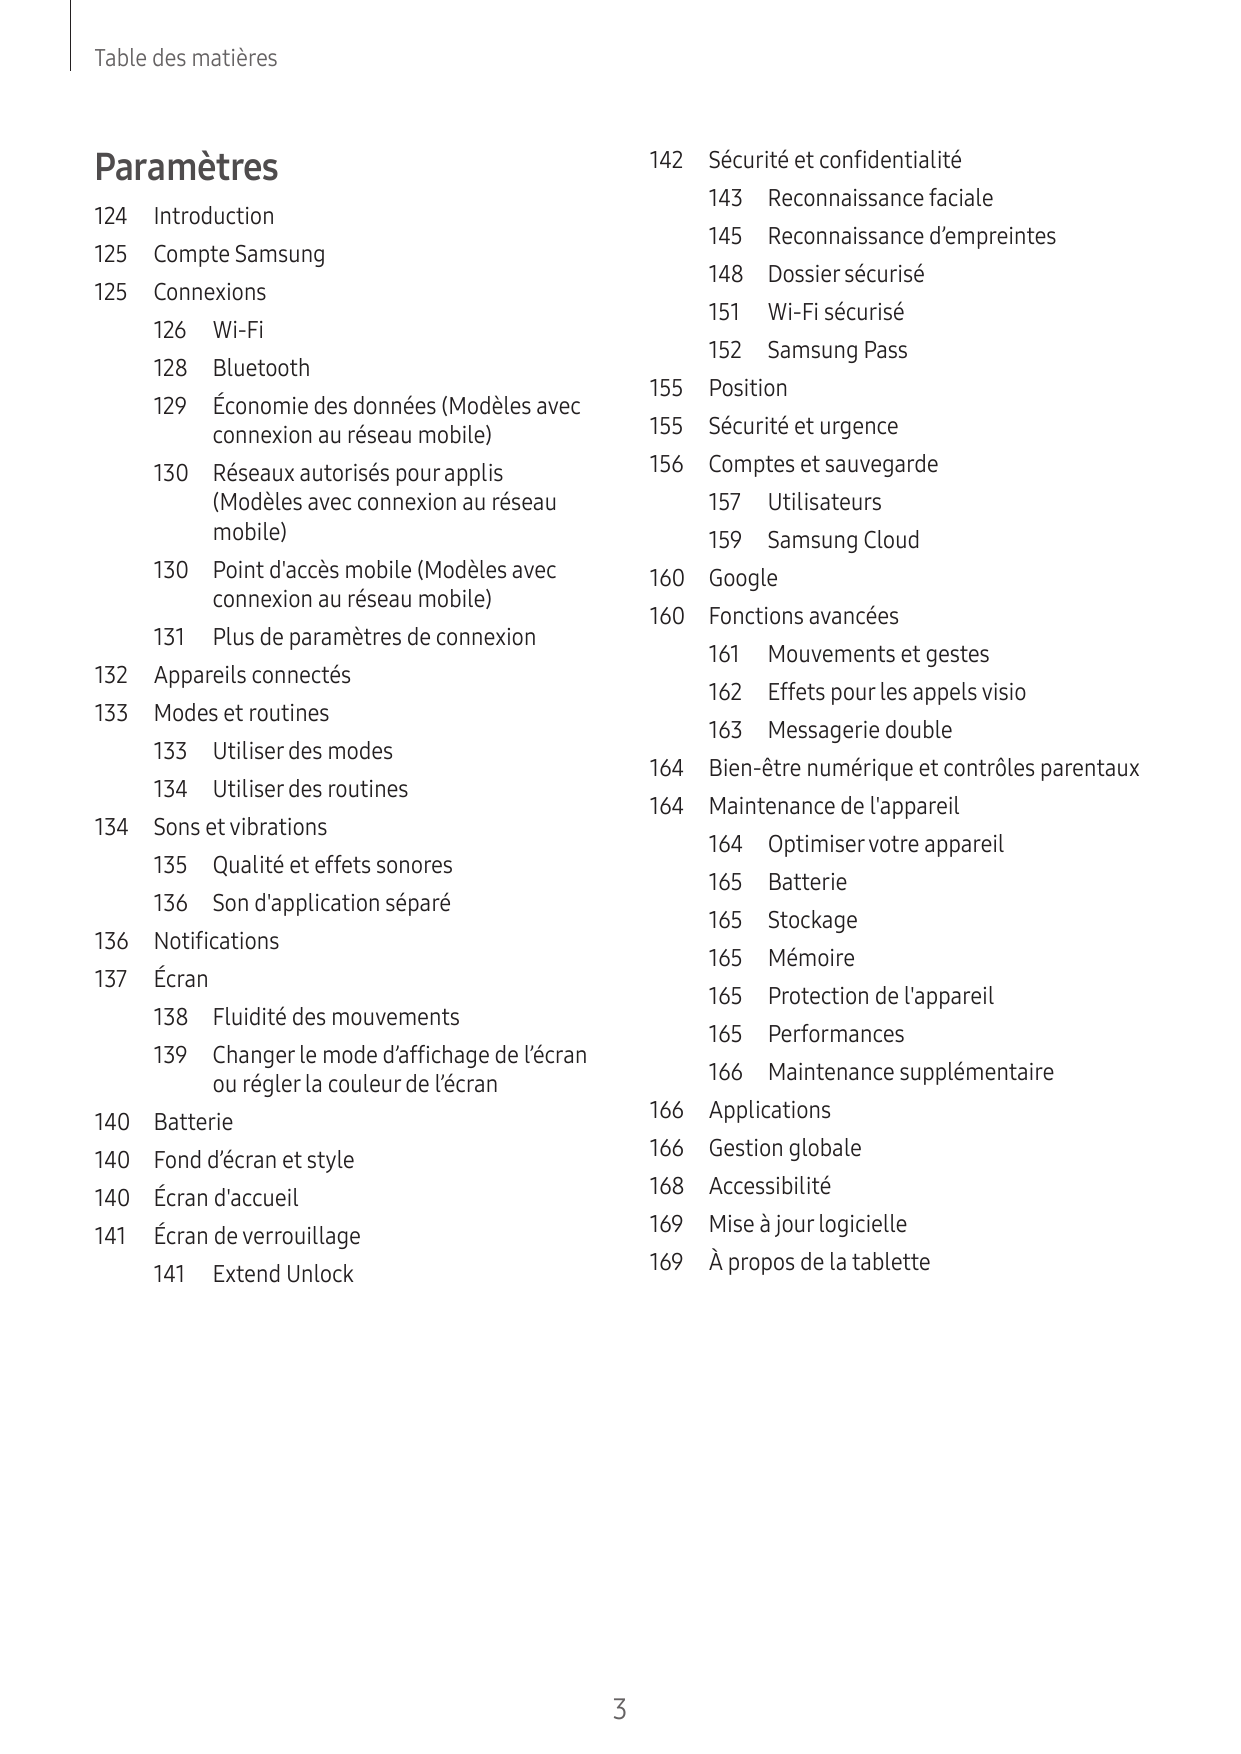 Table des matièresParamètres142 Sécurité et confidentialité143 Reconnaissance faciale124Introduction145 Reconnaissance d’emprein